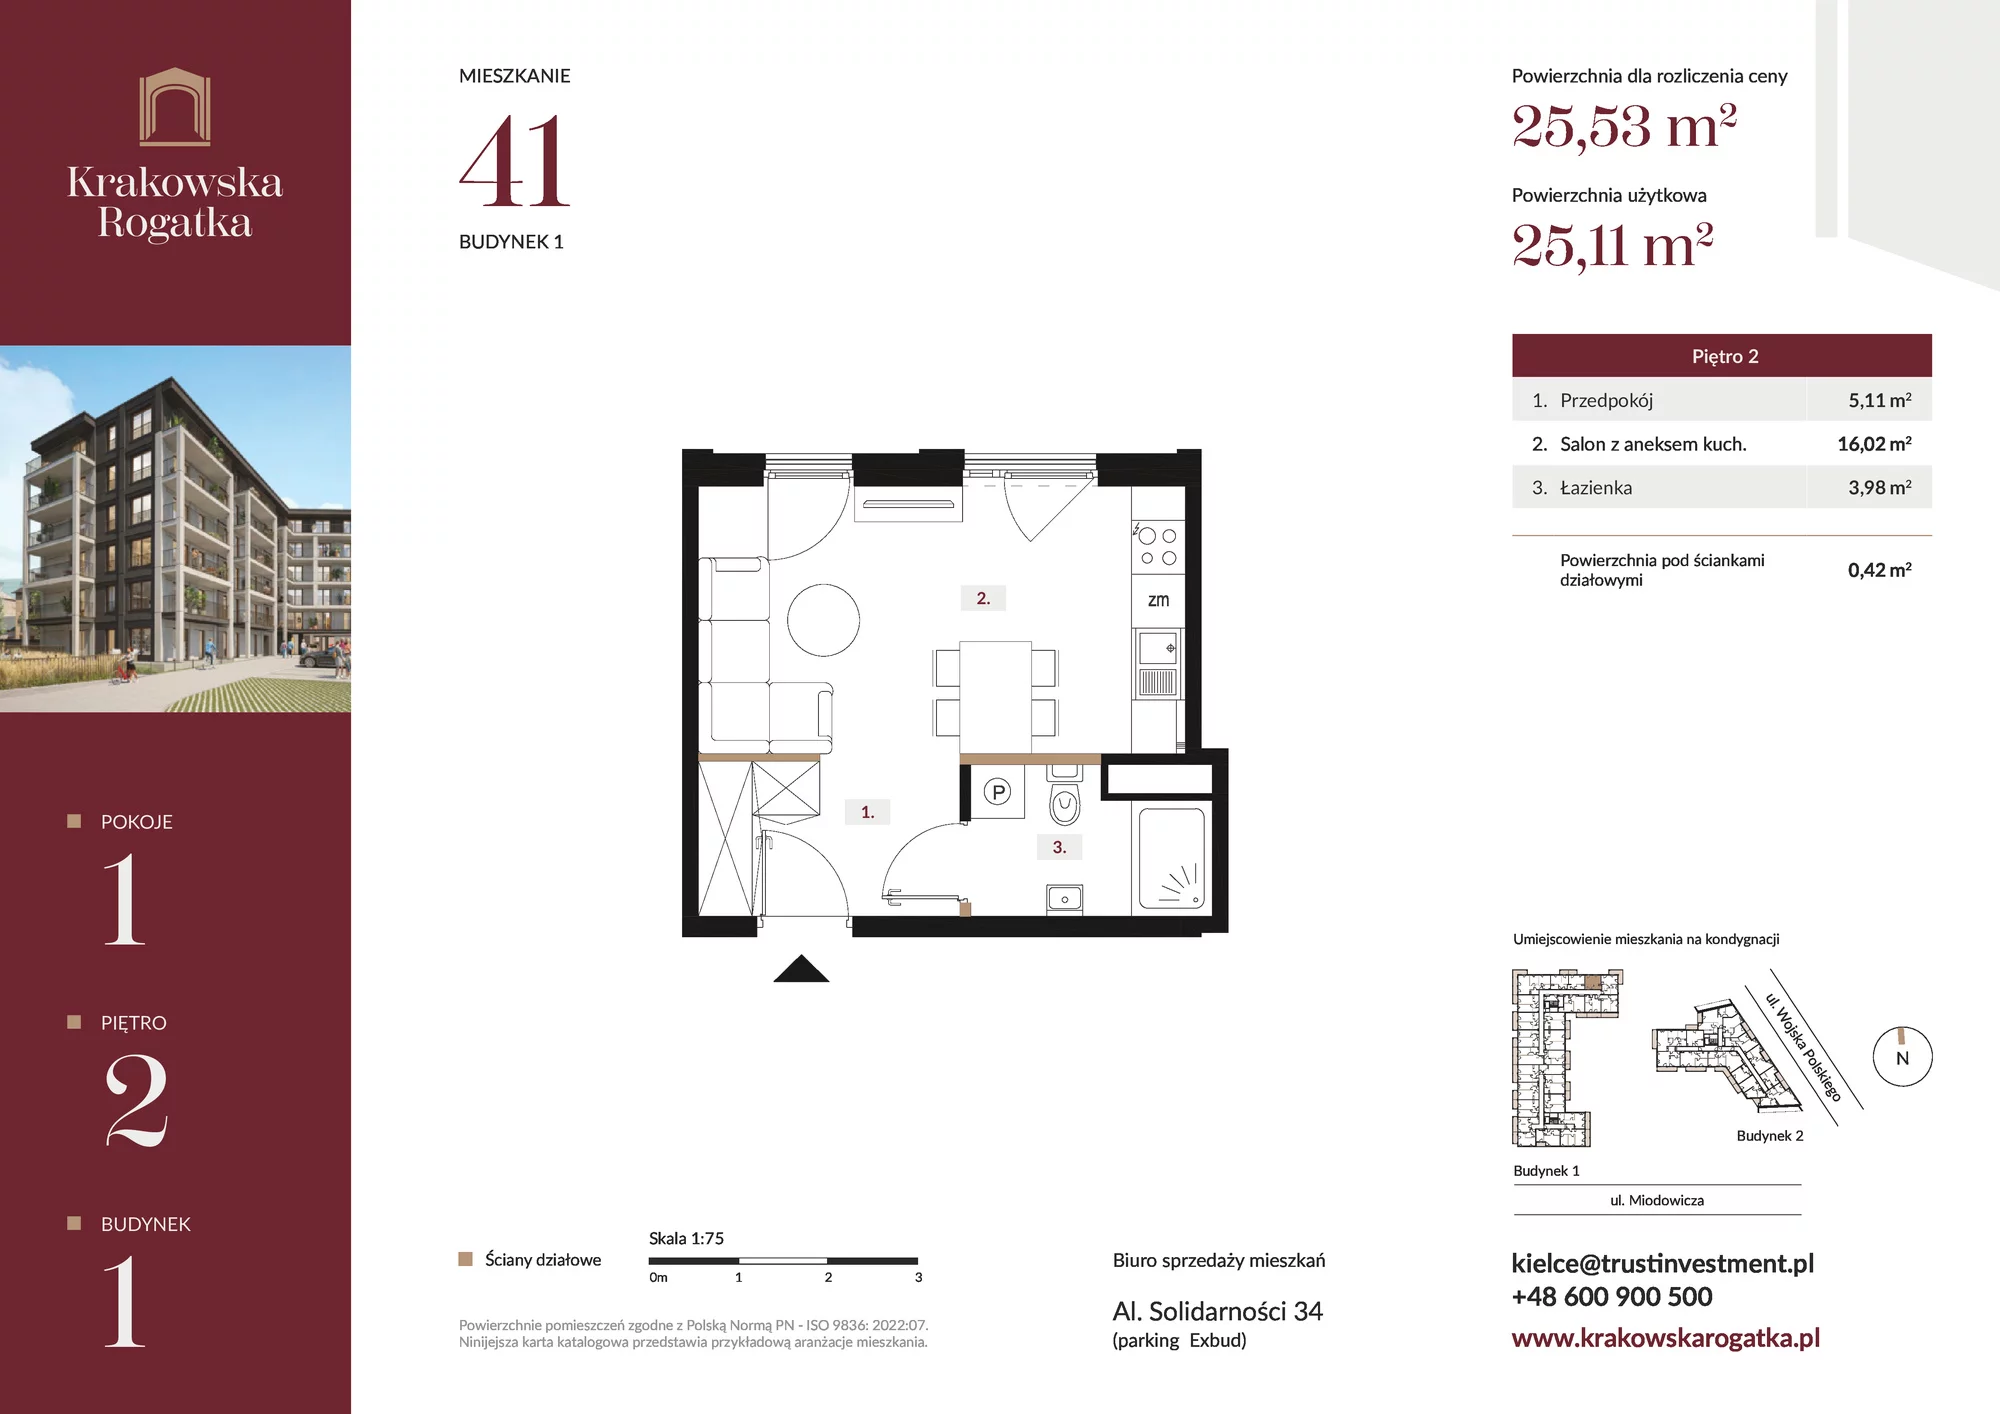 Mieszkanie 25,53 m², piętro 2, oferta nr Budynek 1 Mieszkanie 41, Krakowska Rogatka, Kielce, ul. Miodowicza 1